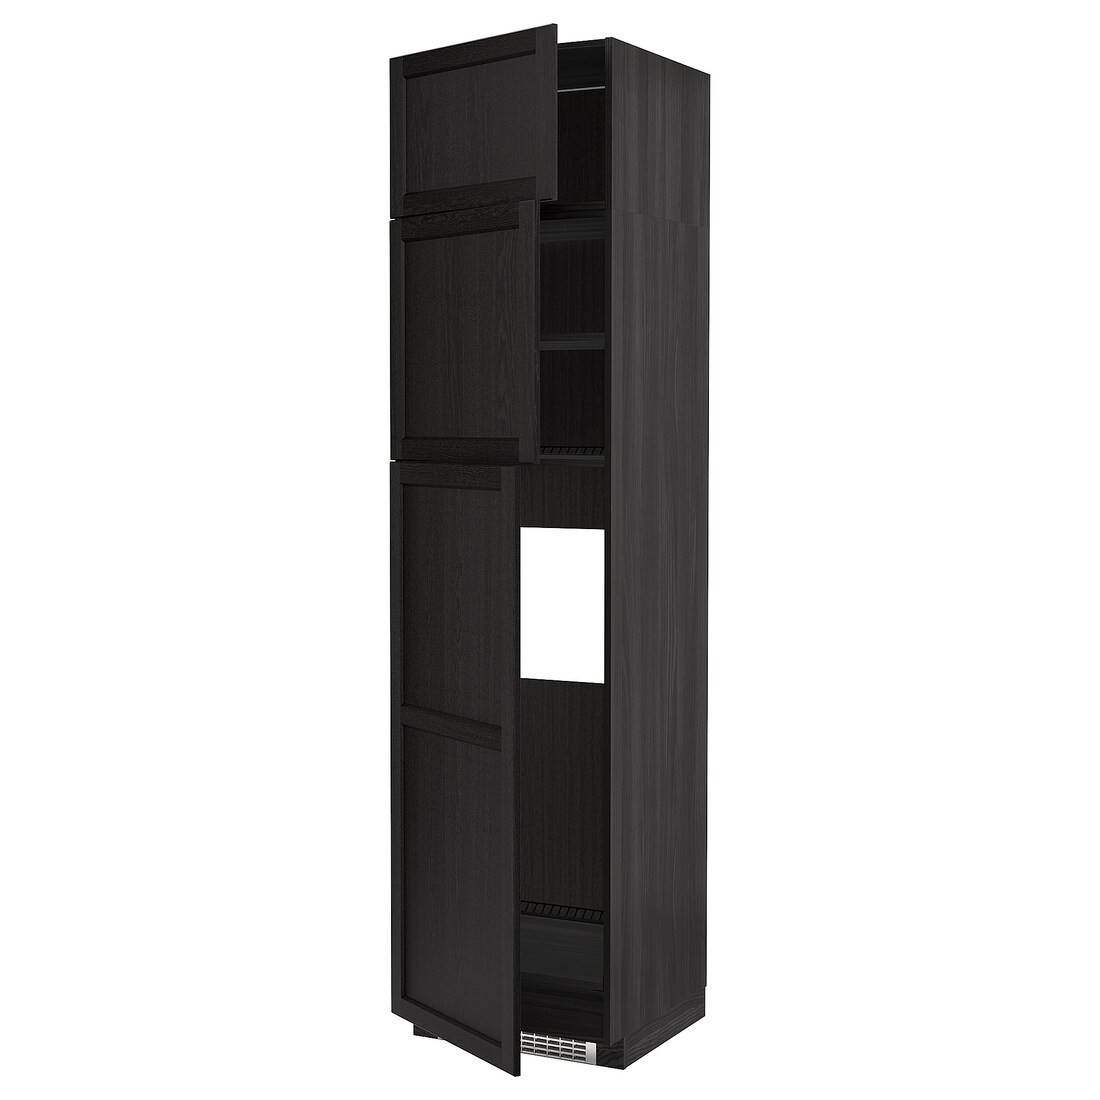 METOD МЕТОД Высокий шкаф для холодильника с 3 дверями, черный / Lerhyttan черная морилка, 60x60x240 см